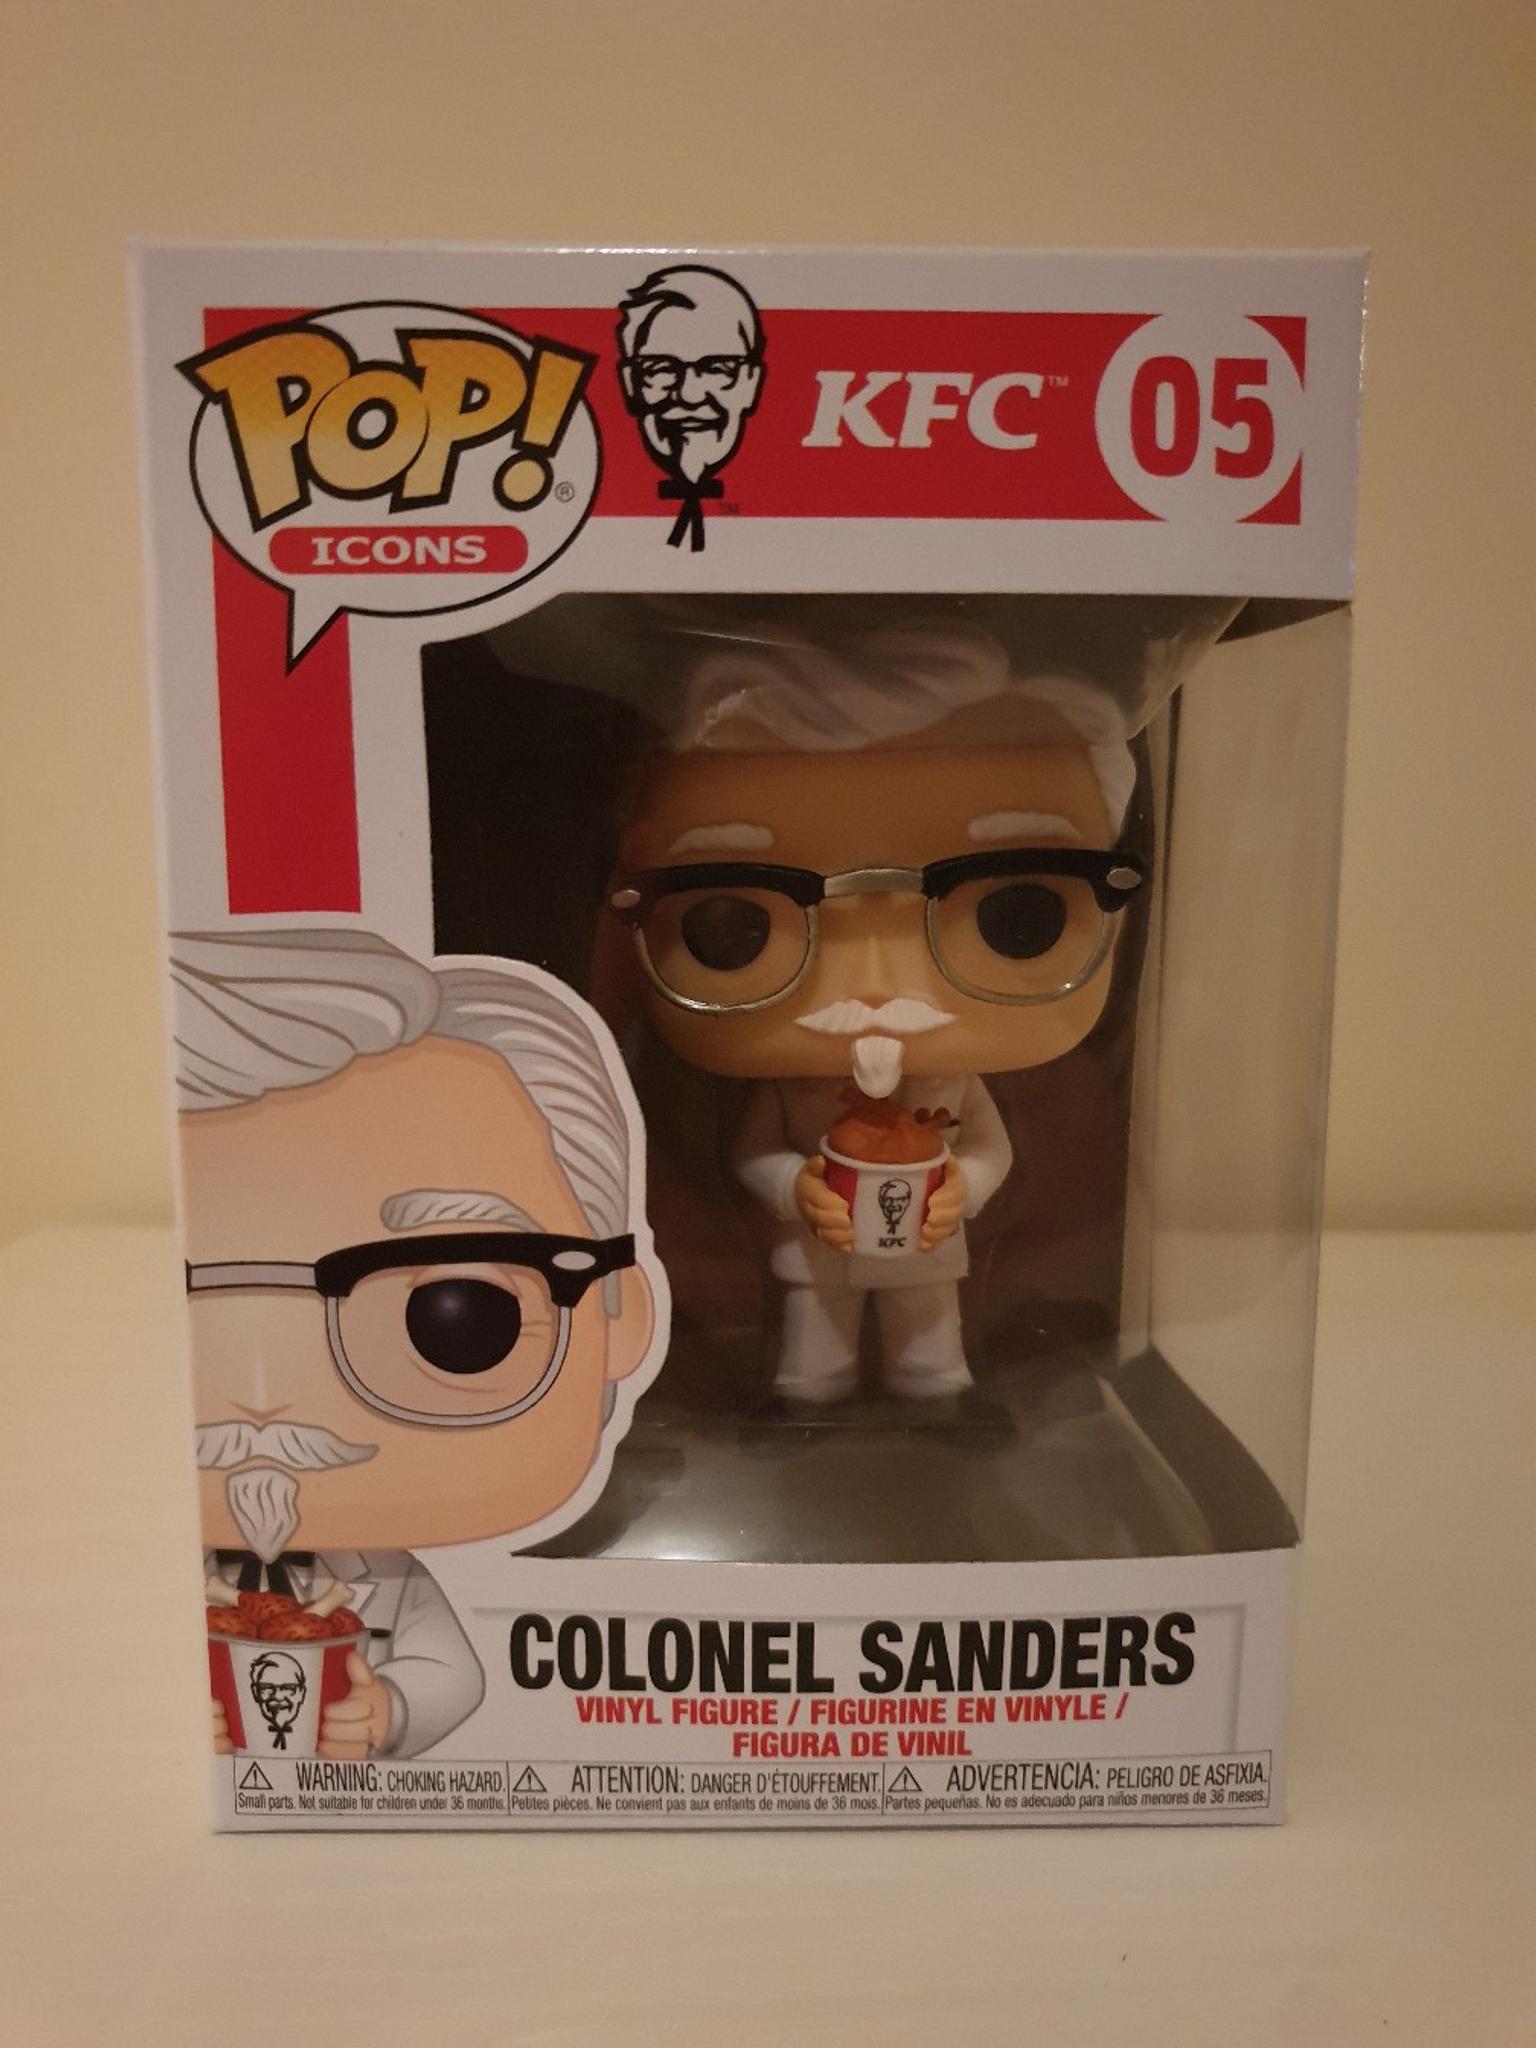 Colonel sanders pop vinyl